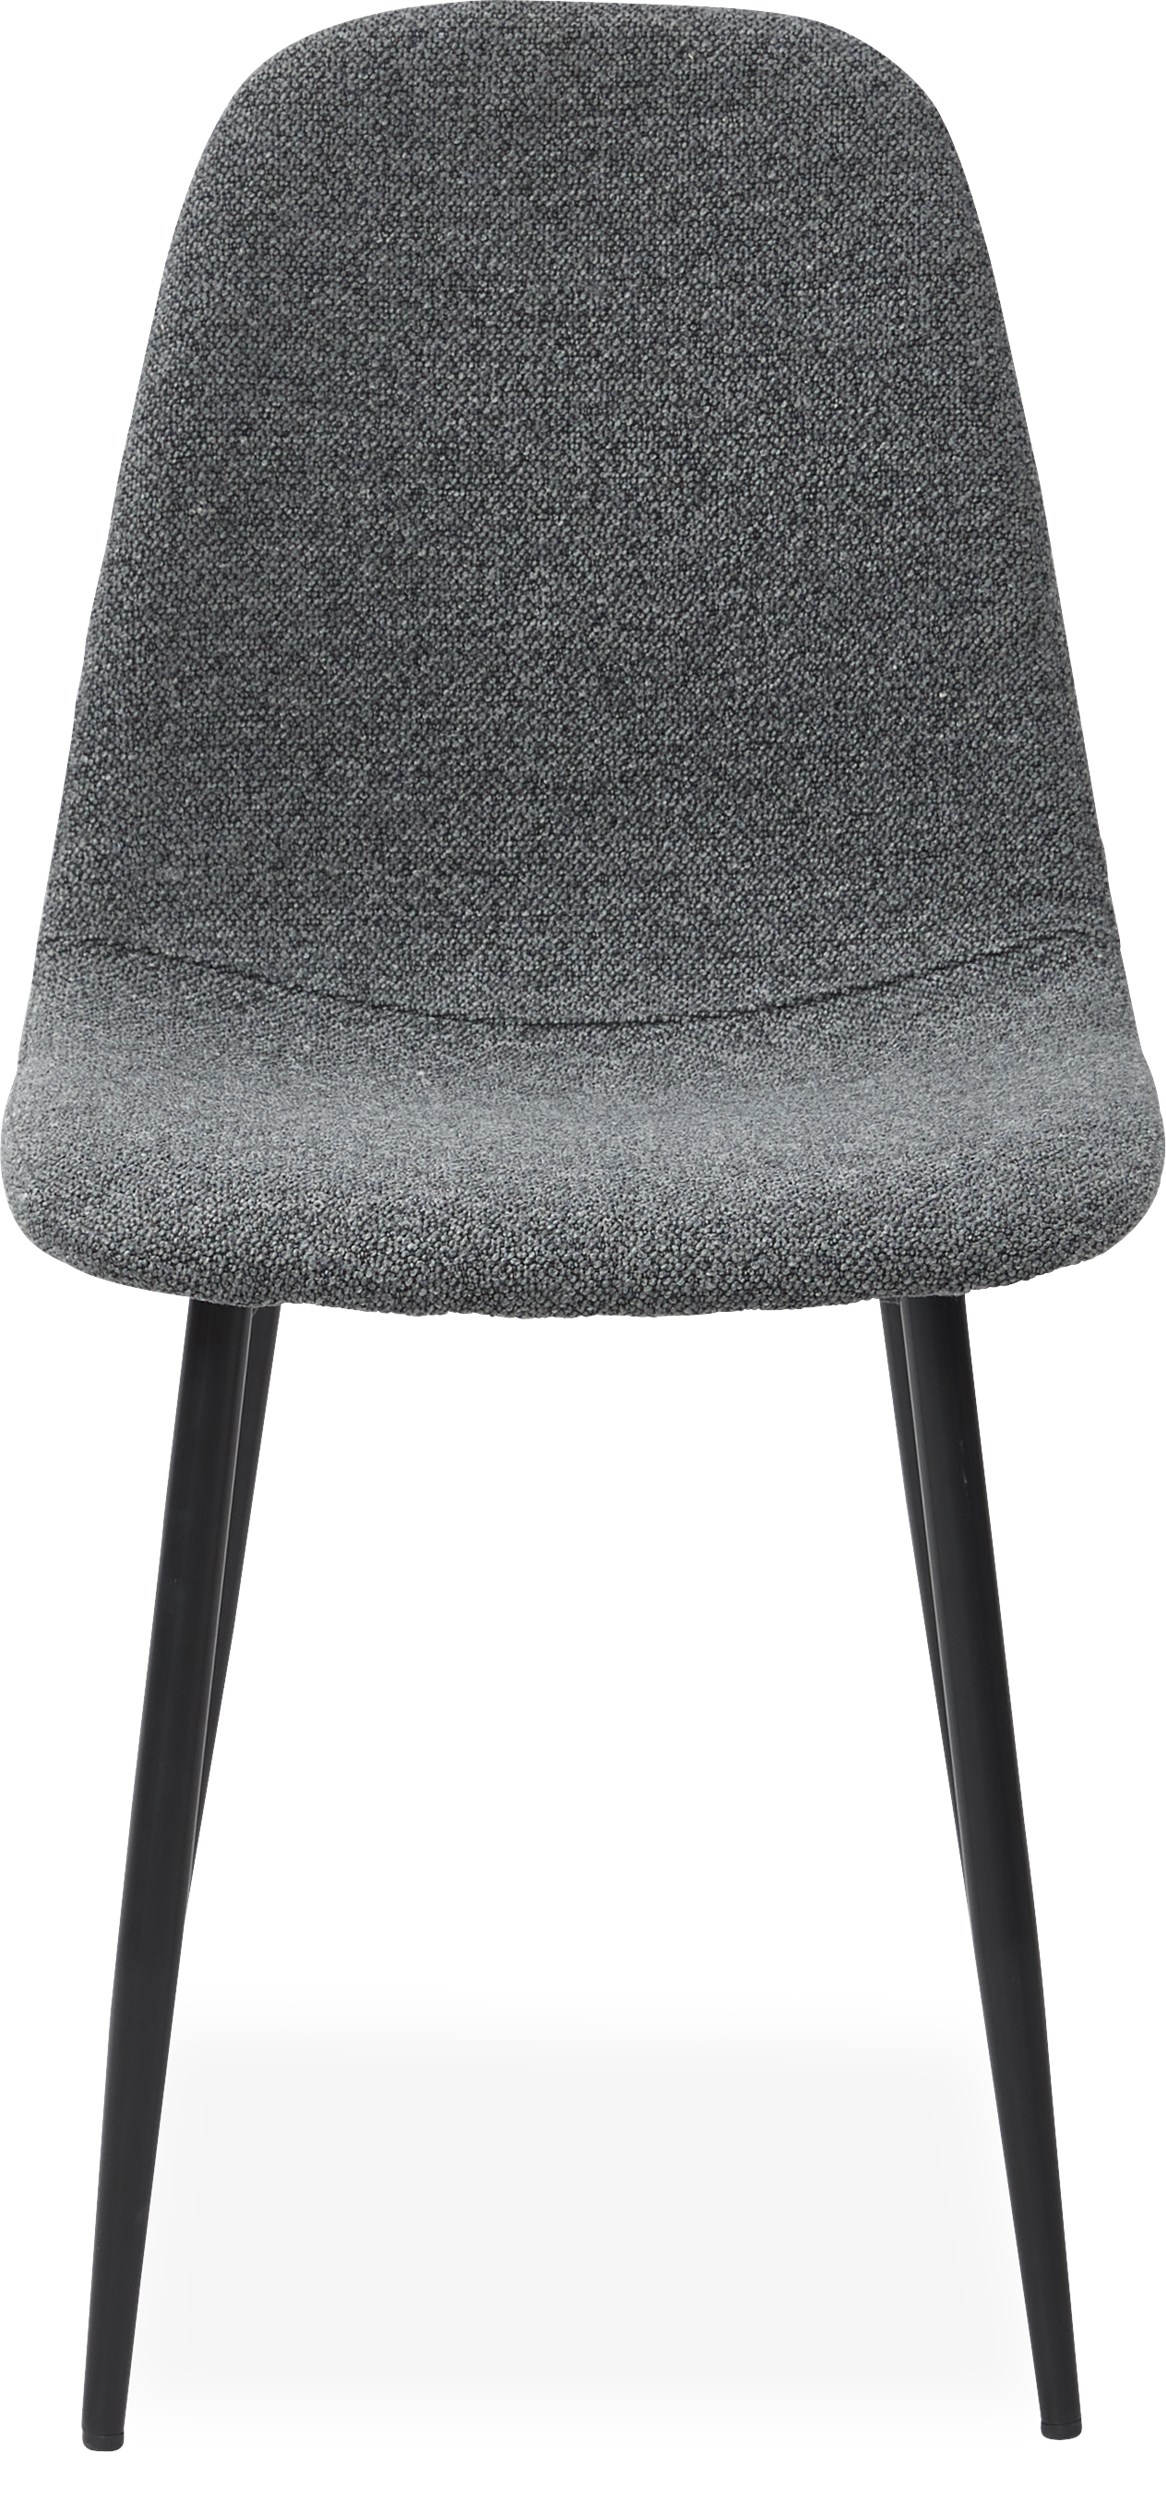 Timon Spisebordsstol - Sæde i 130 deep grey boucle st og ben i sort pulverlakeret metal